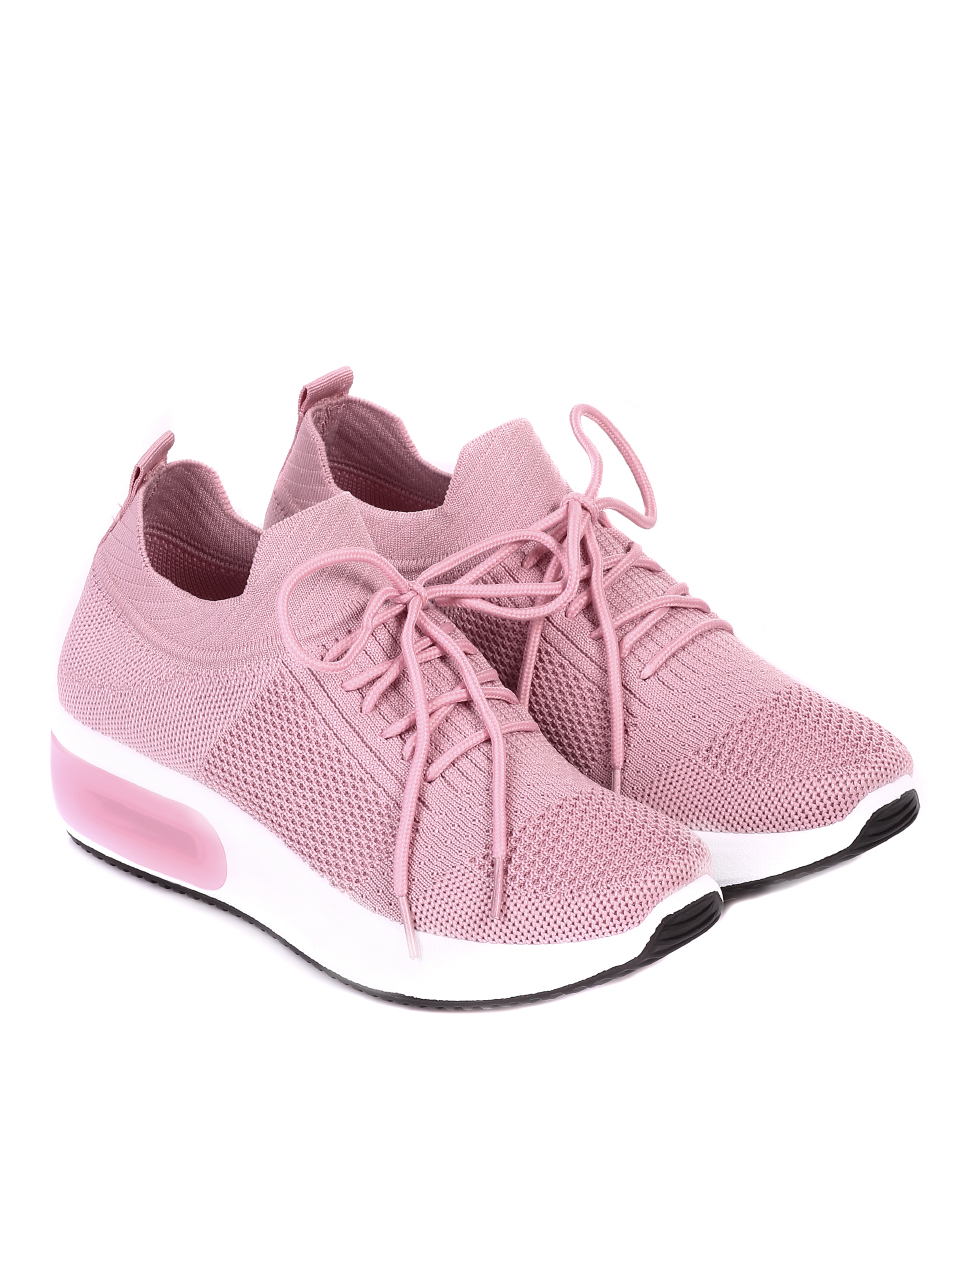 Ежедневни дамски обувки от текстил в розово 3U-21007 pink